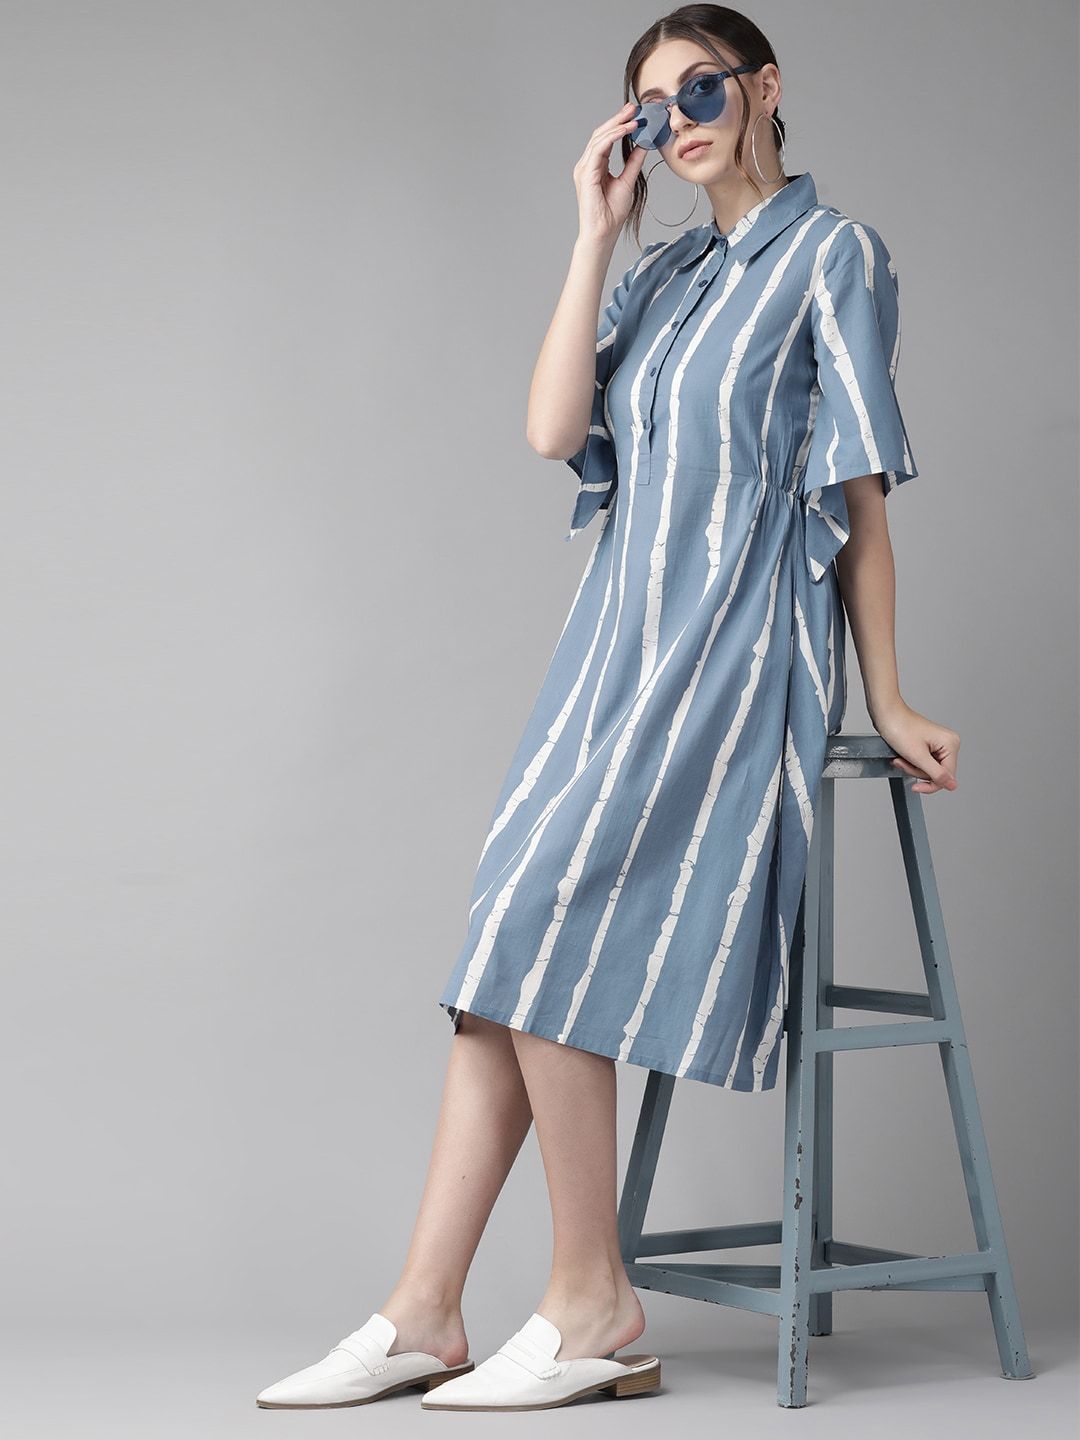 Women's  Blue & White Striped Shirt Dress - AKS